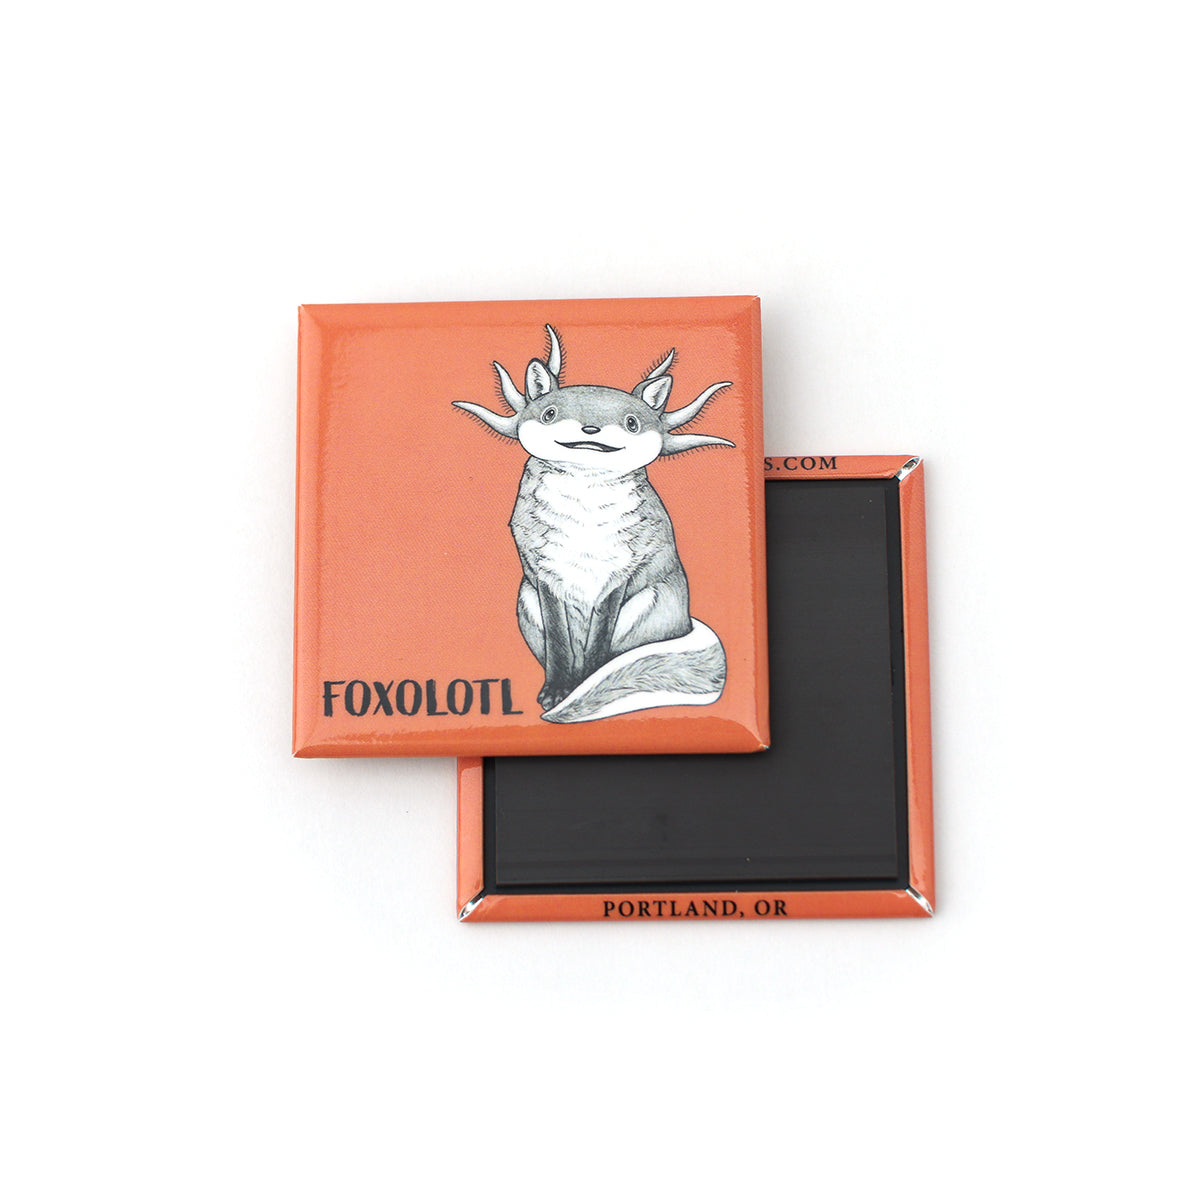 Foxolotl | Fox + Axolotl Hybrid Animal | 2" Fridge Magnet